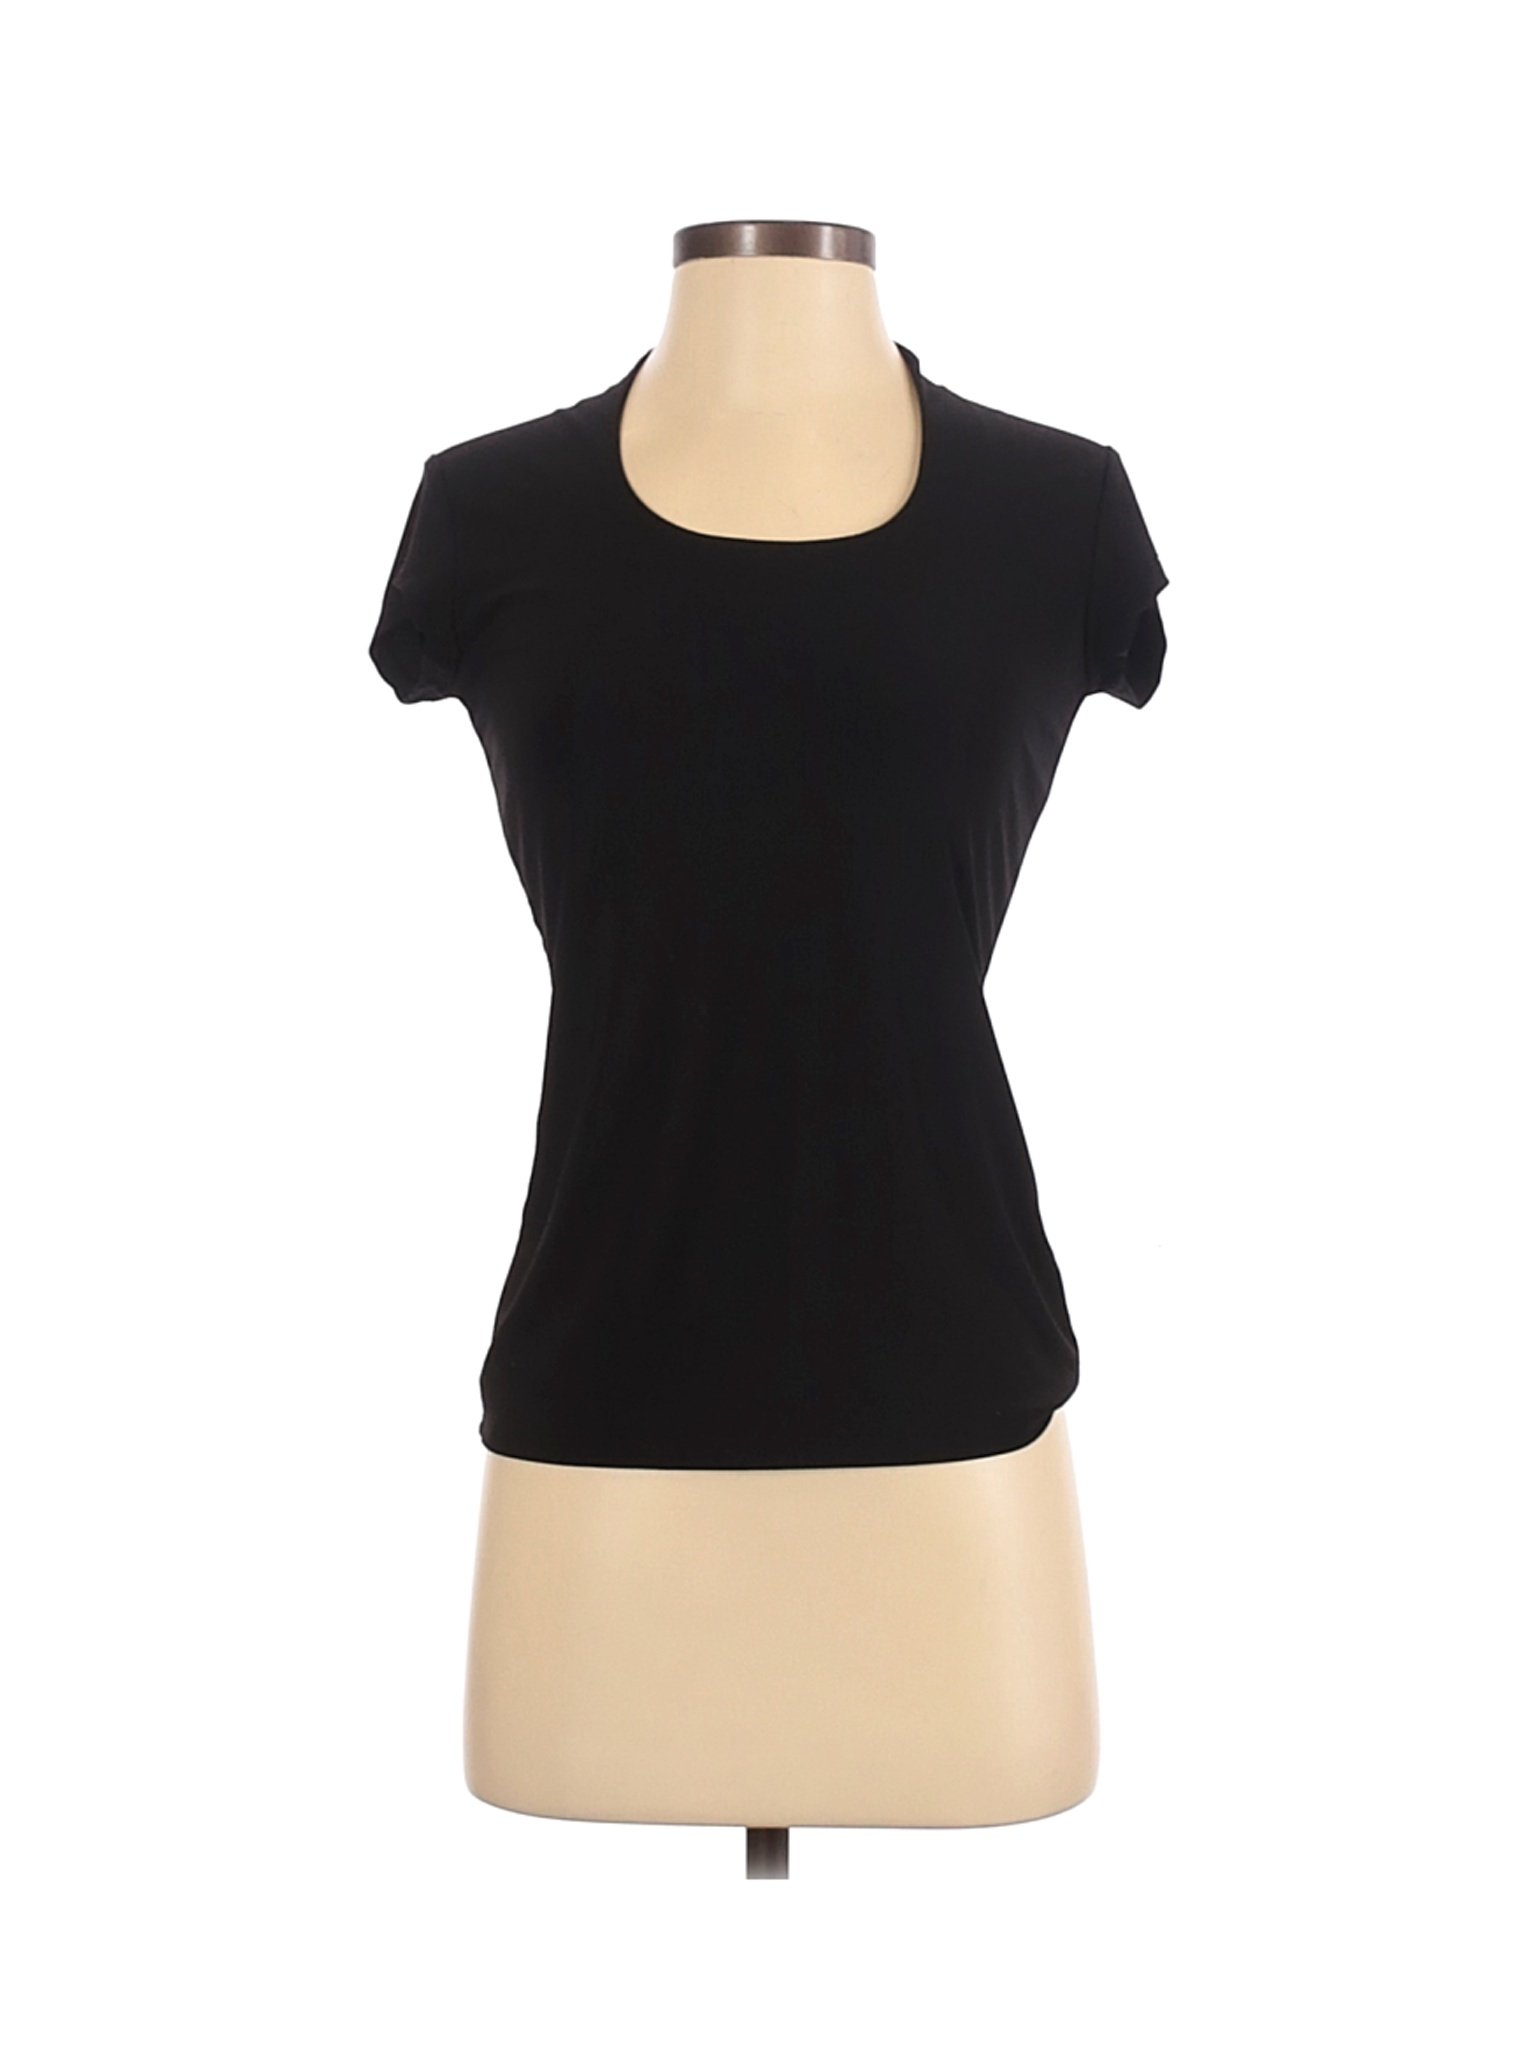 Grace Women Black Short Sleeve Top XS | eBay